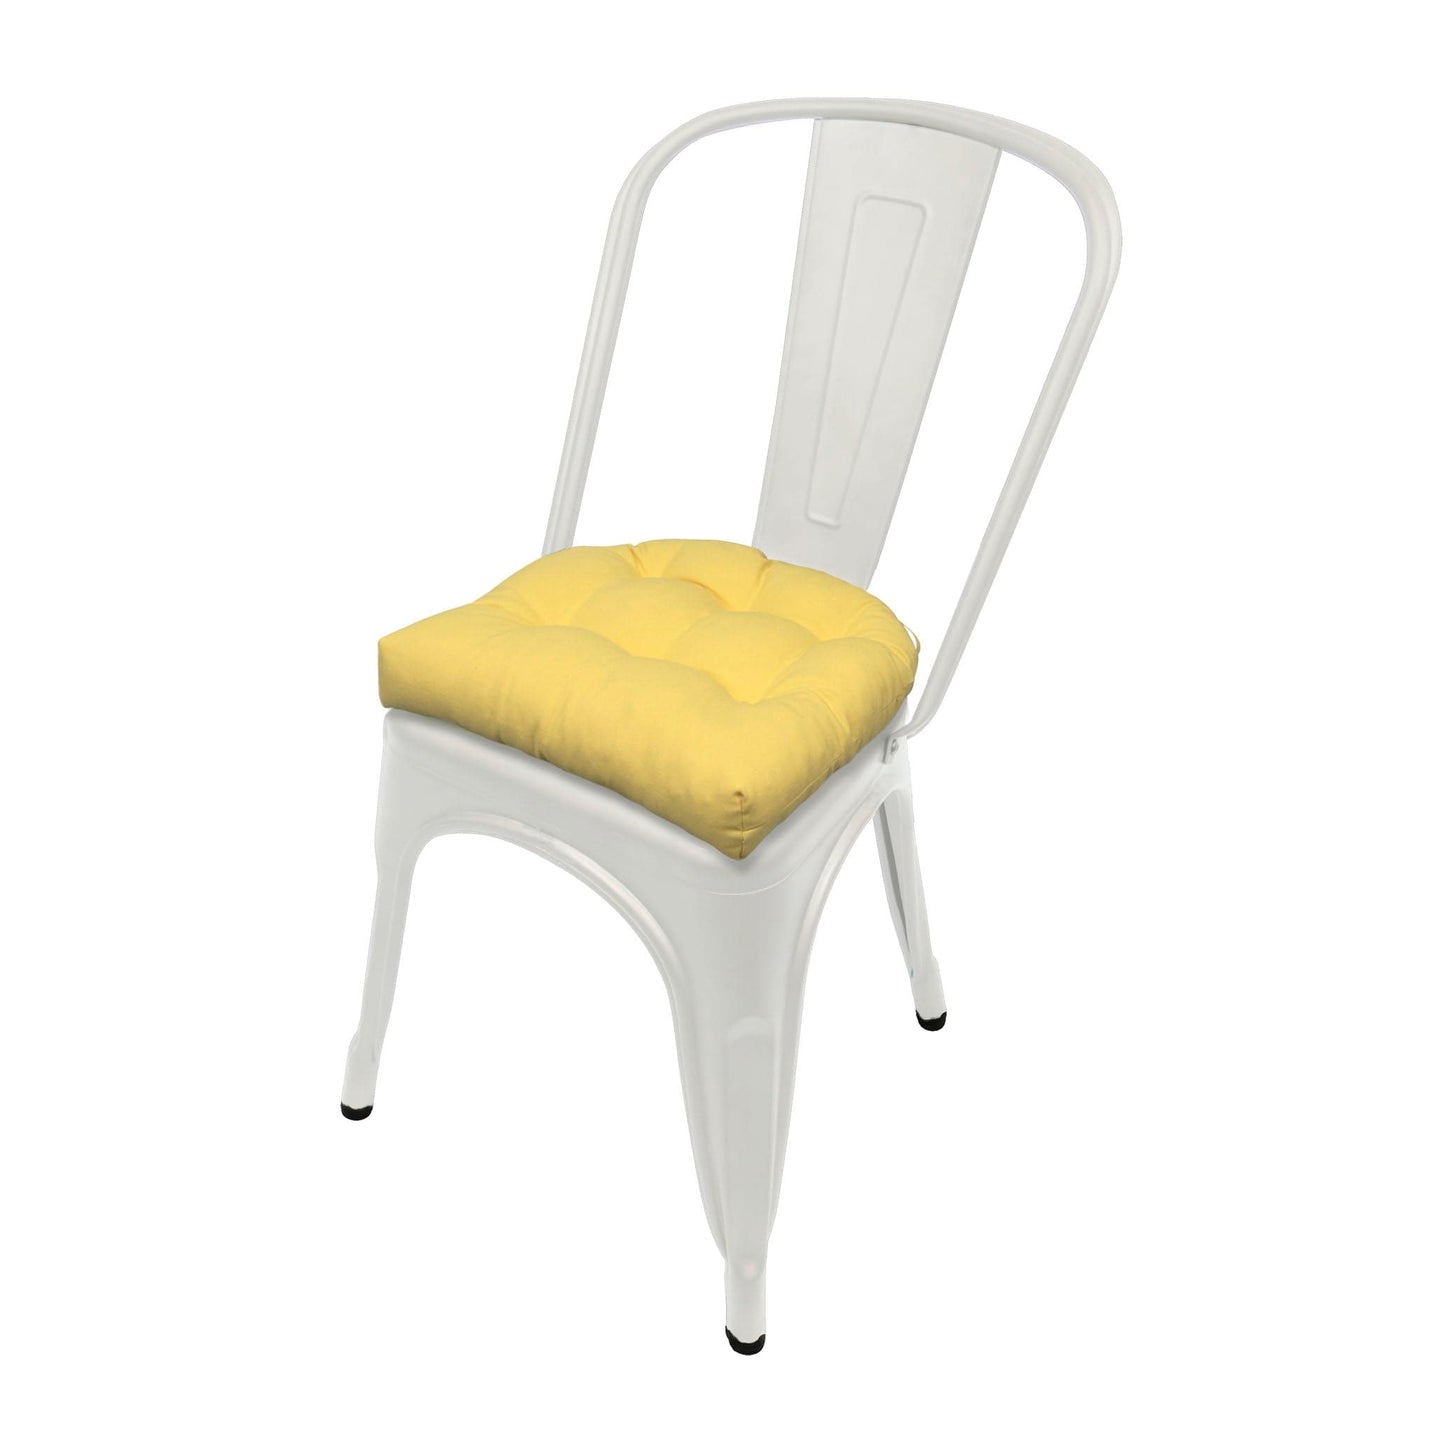 Cotton Duck Yellow Industrial Chair Cushion - Latex Foam Fill - Barnett Home Decor 